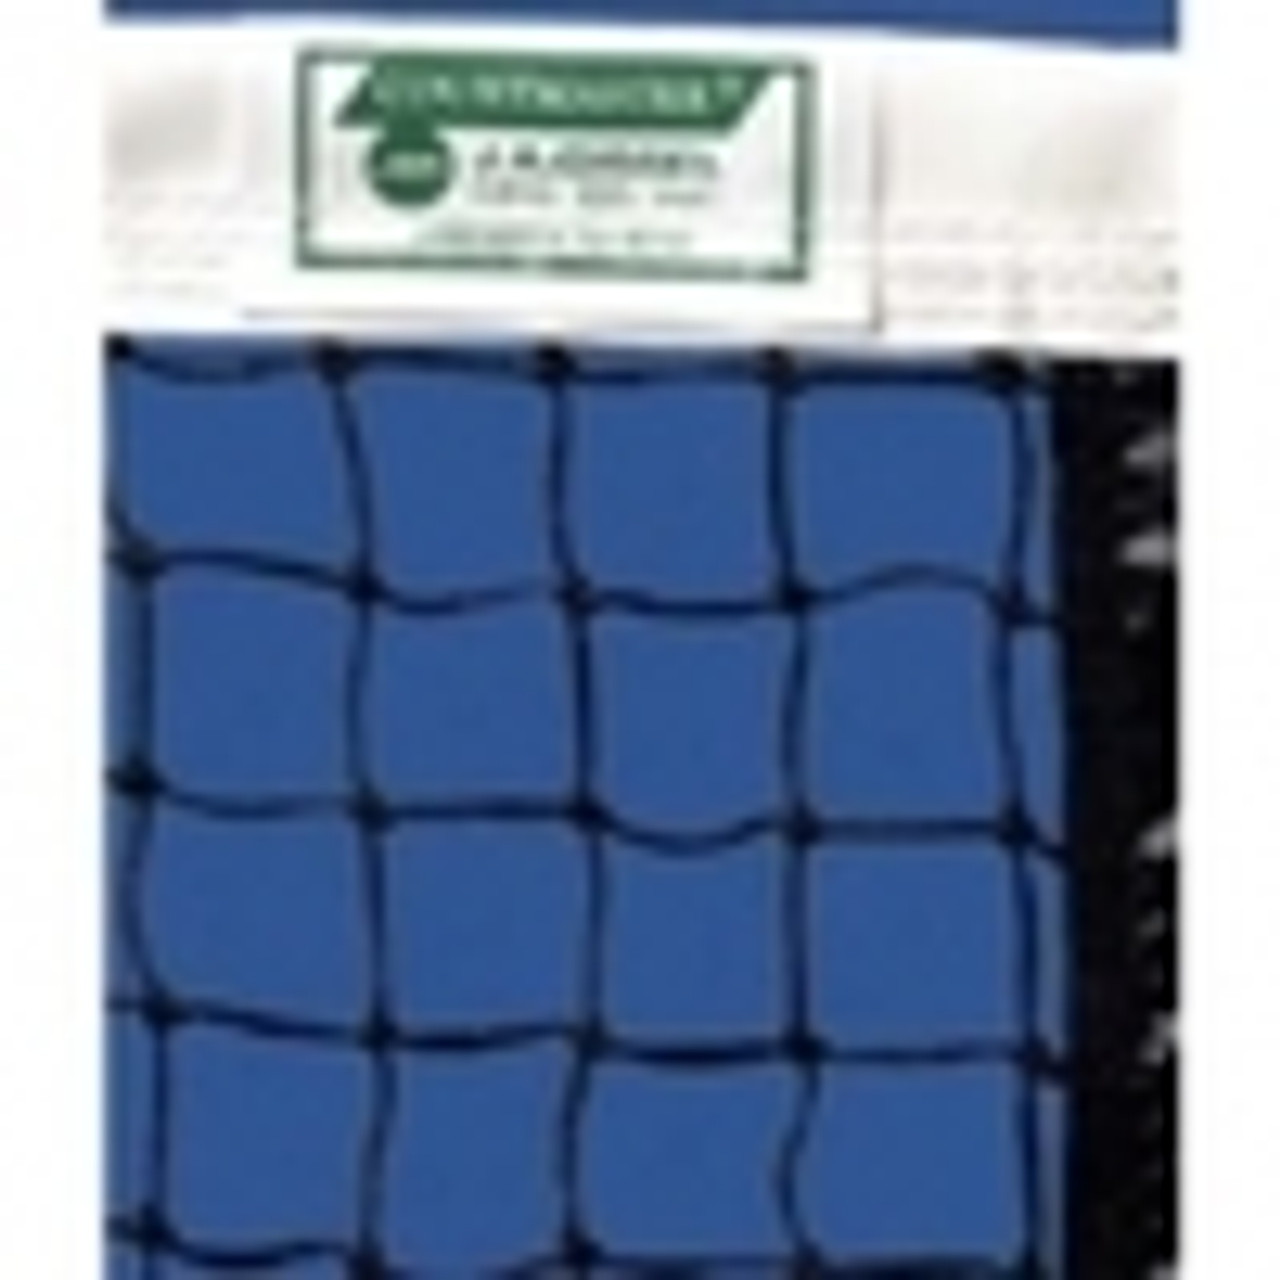 Har-Tru Courtmaster DHS 3.0 Tennis Net with center strap